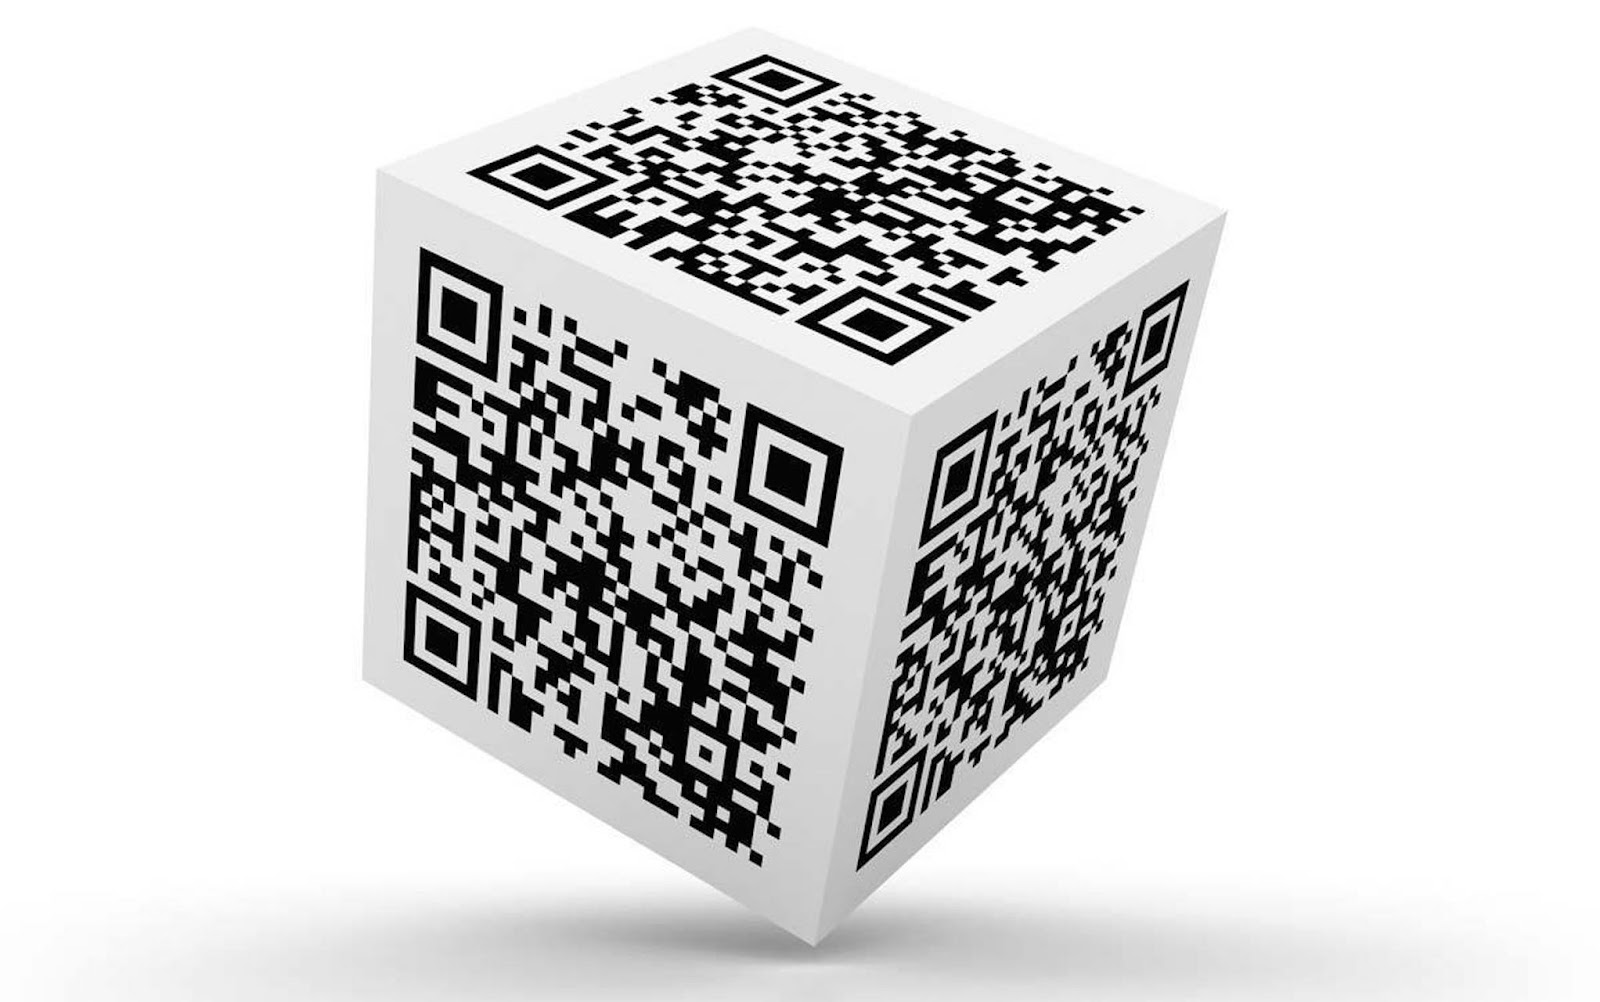 Qr код куб. Генератор кьюар кода. Куб с QR кодом. Изображение QR кода. Объемный QR код.